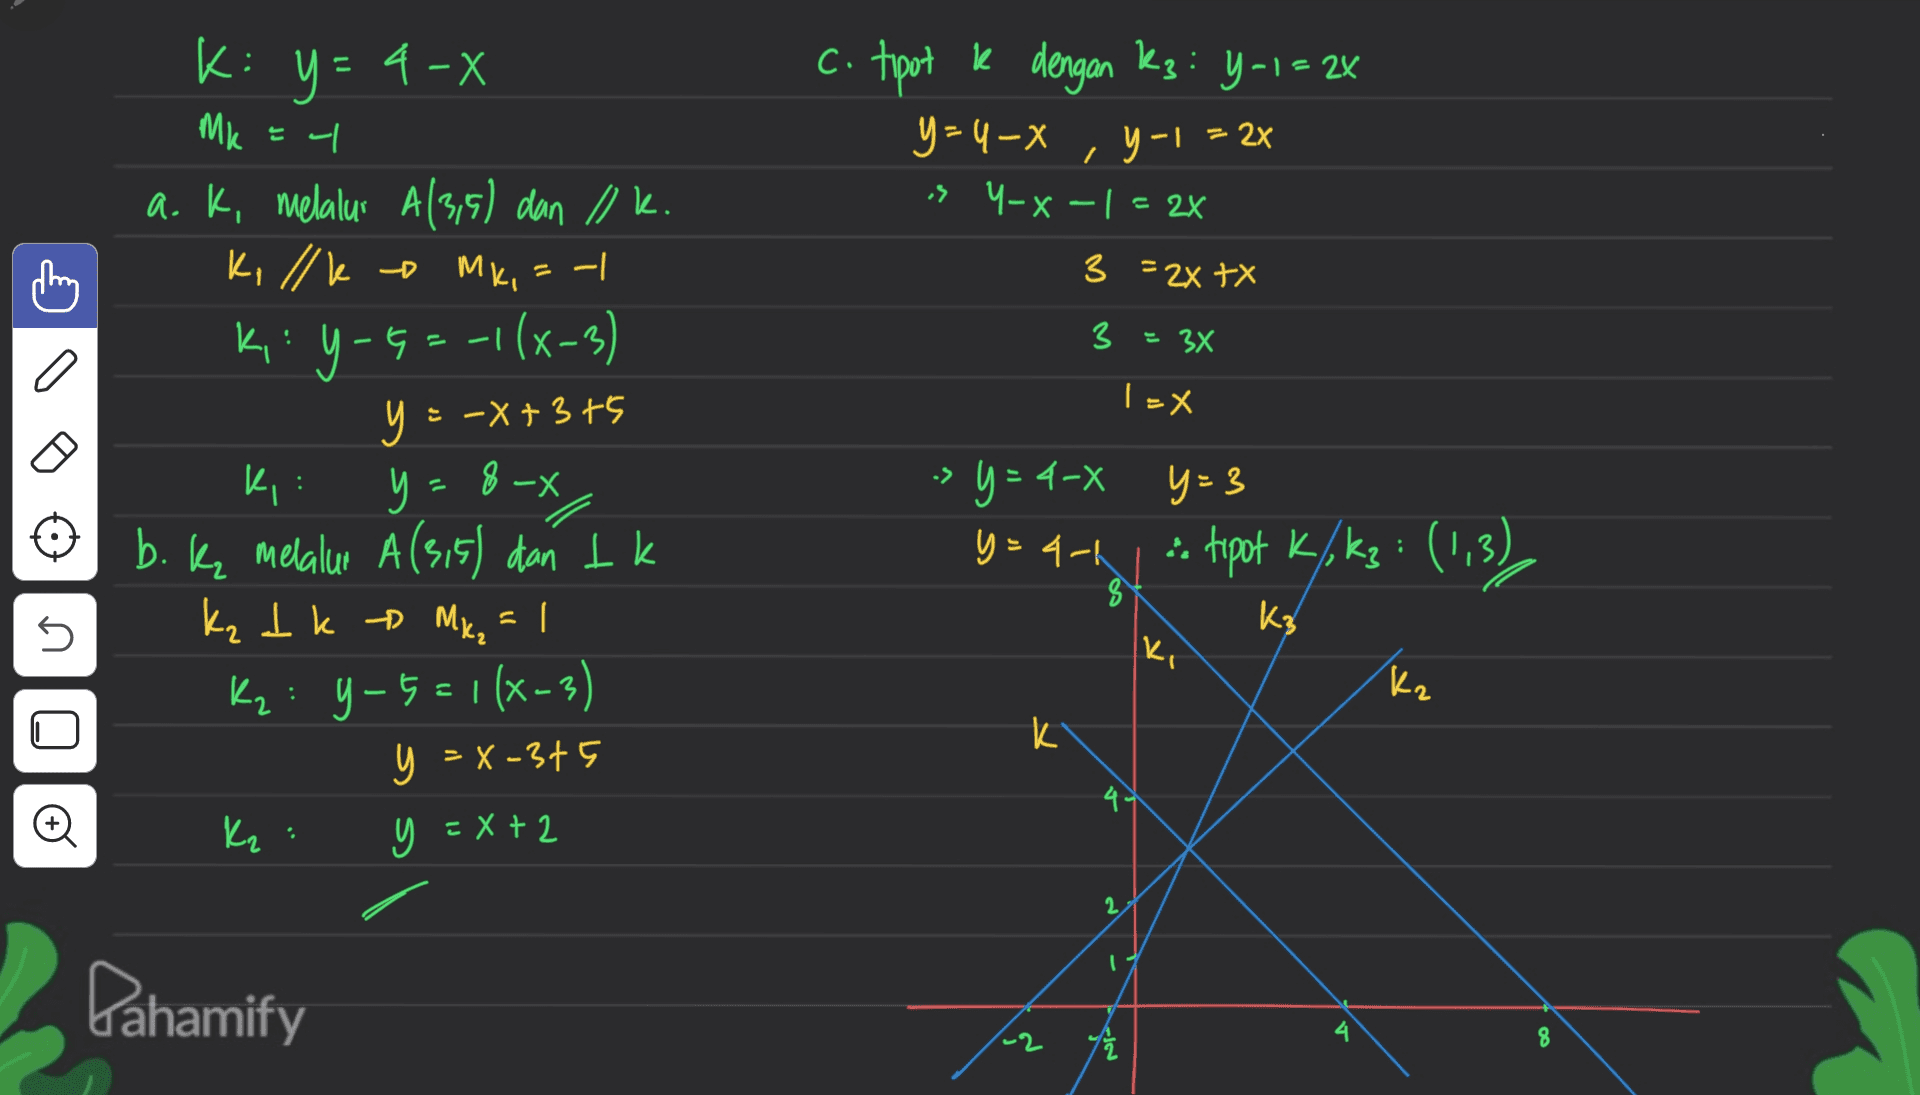 E| c. tipot k dengan Kz: Y-1= 2x y=4-X -> Y-x-1 = 2x , Y-1 = 2x 3 = 2x tx 3 = 3x IX 3 K: y = 4-X - Mk a. k, melalui A(3,5) dan Ilk. Killk - MK, = -1 K,:y-G=-1(x-3) y = -x+375 y +3 : y = 8 y b. k melalur A(3,5) dan tk Kz Ik	Mc, =l K₂: 9-5=1(x-3) – = x-3 y = x-375 Kz: y = x + 2 ki 8-X -= X > y=4-8 y=3 y=4-1 2 tipot K/, kz: (1,3) 8 5 K3 2 ka k 4. Đ 2 I Dahamify 8 